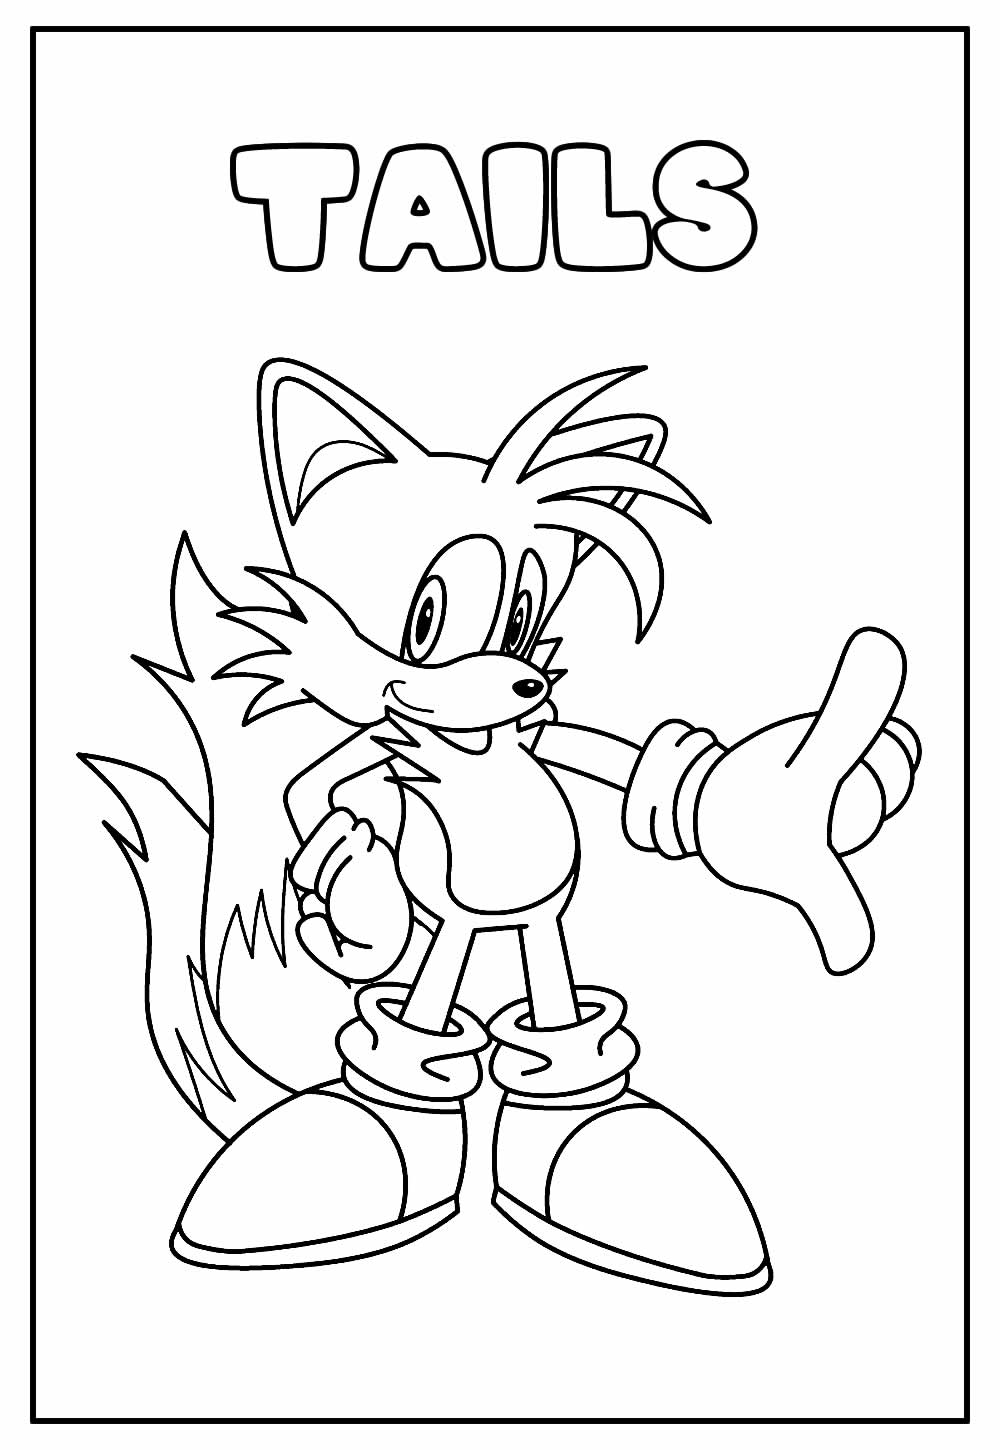 Desenho Educativo de Tails para colorir